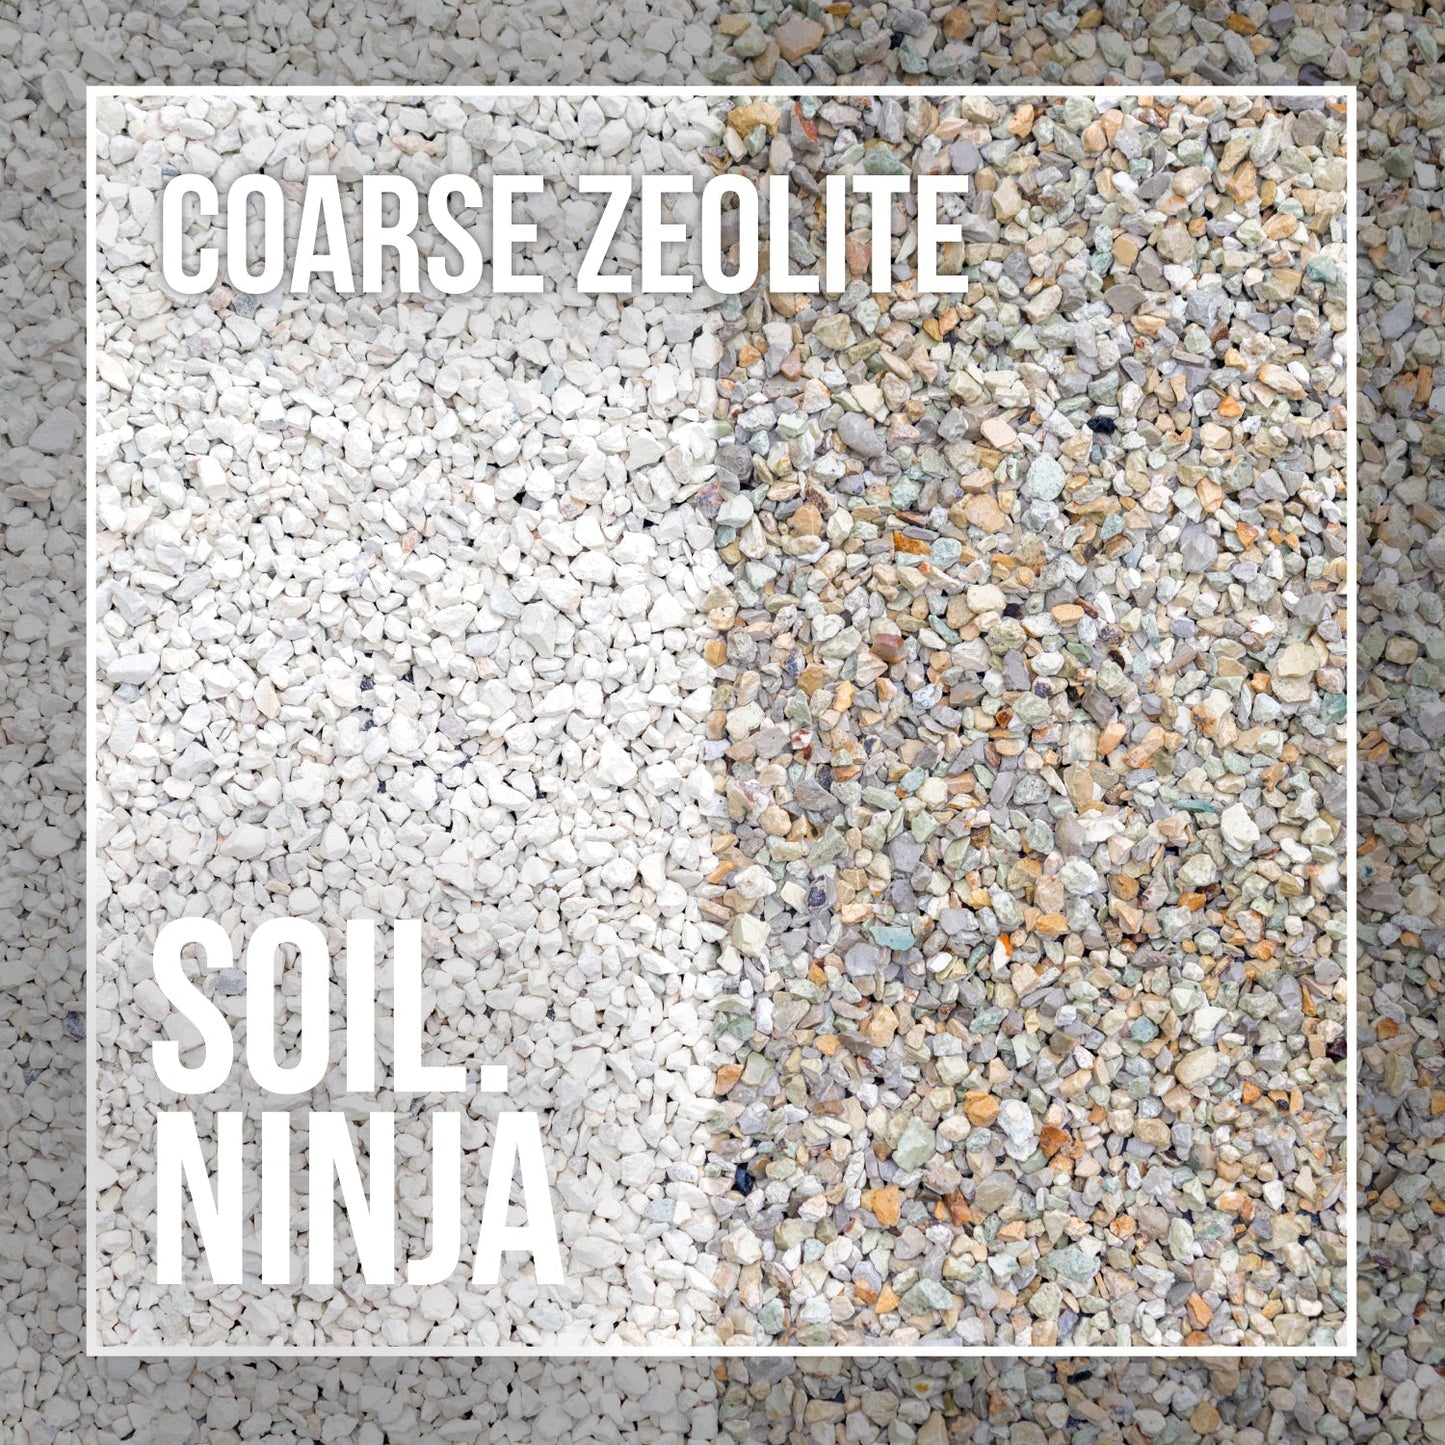 Substrate Soil Ninja 'Zeolite'